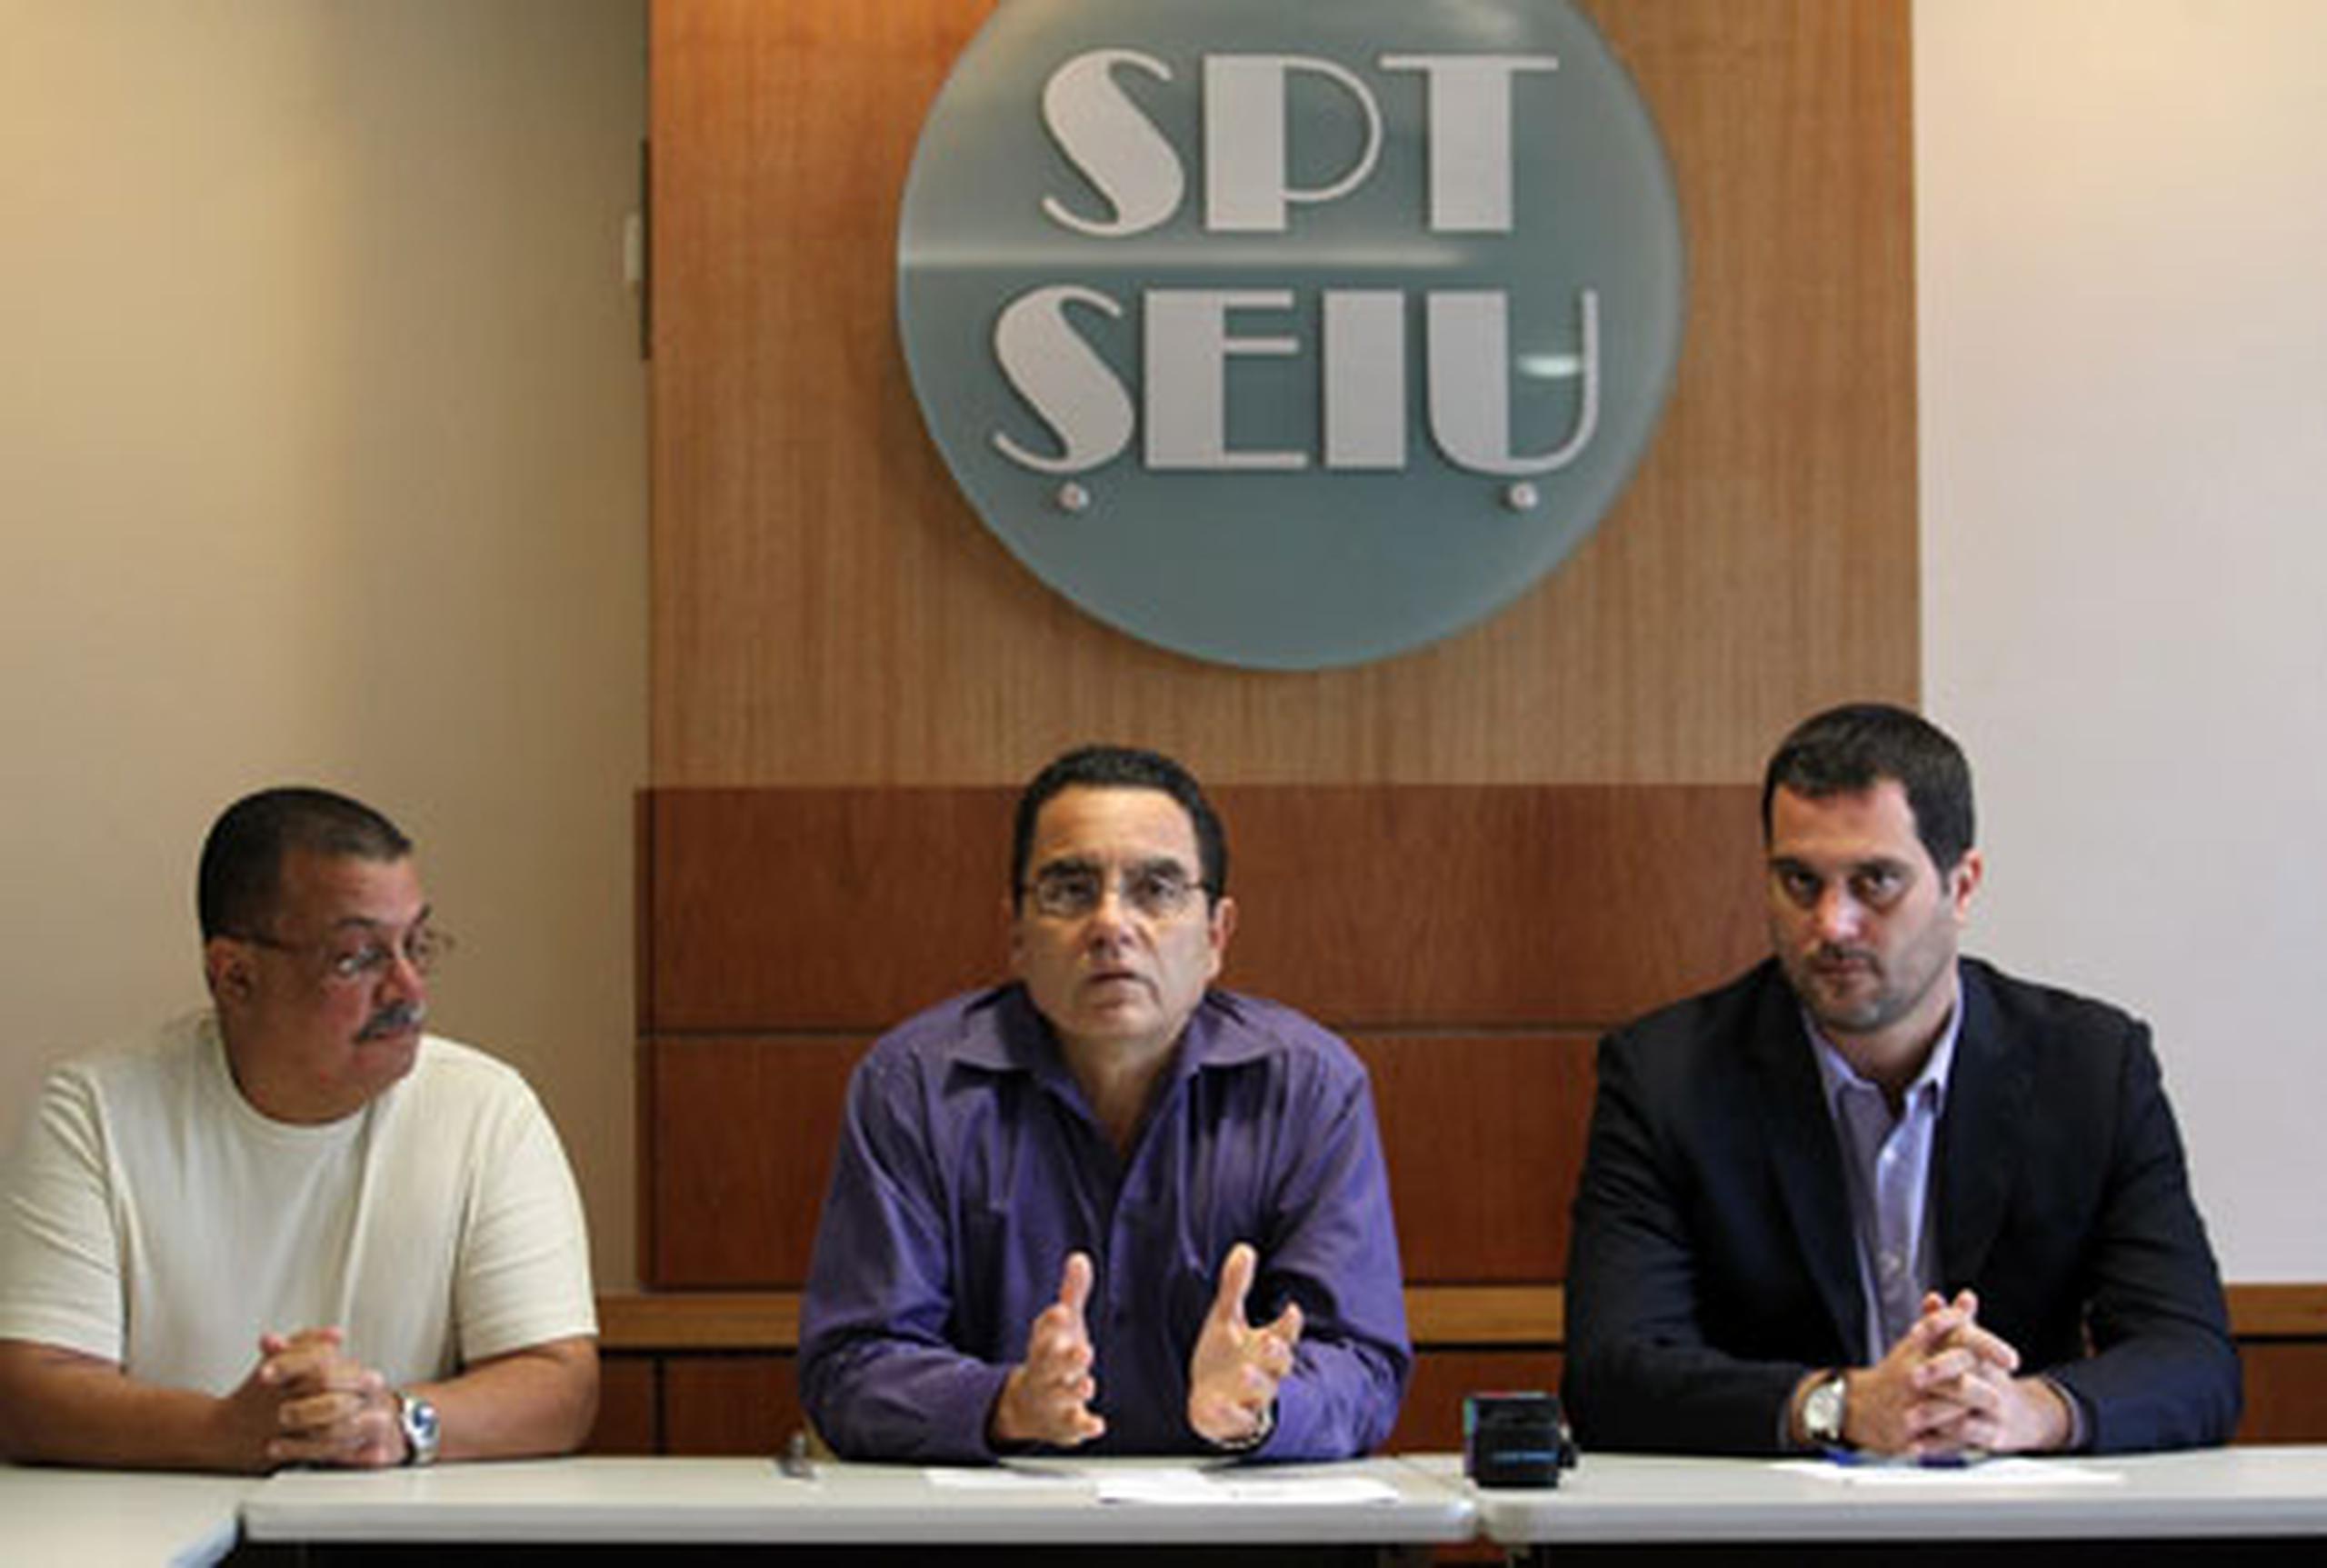 El presidente del SPT, Roberto Pagán, explicó que el sindicato decidió hacer una campaña independiente.(juan.martinez@gfrmedia.com)